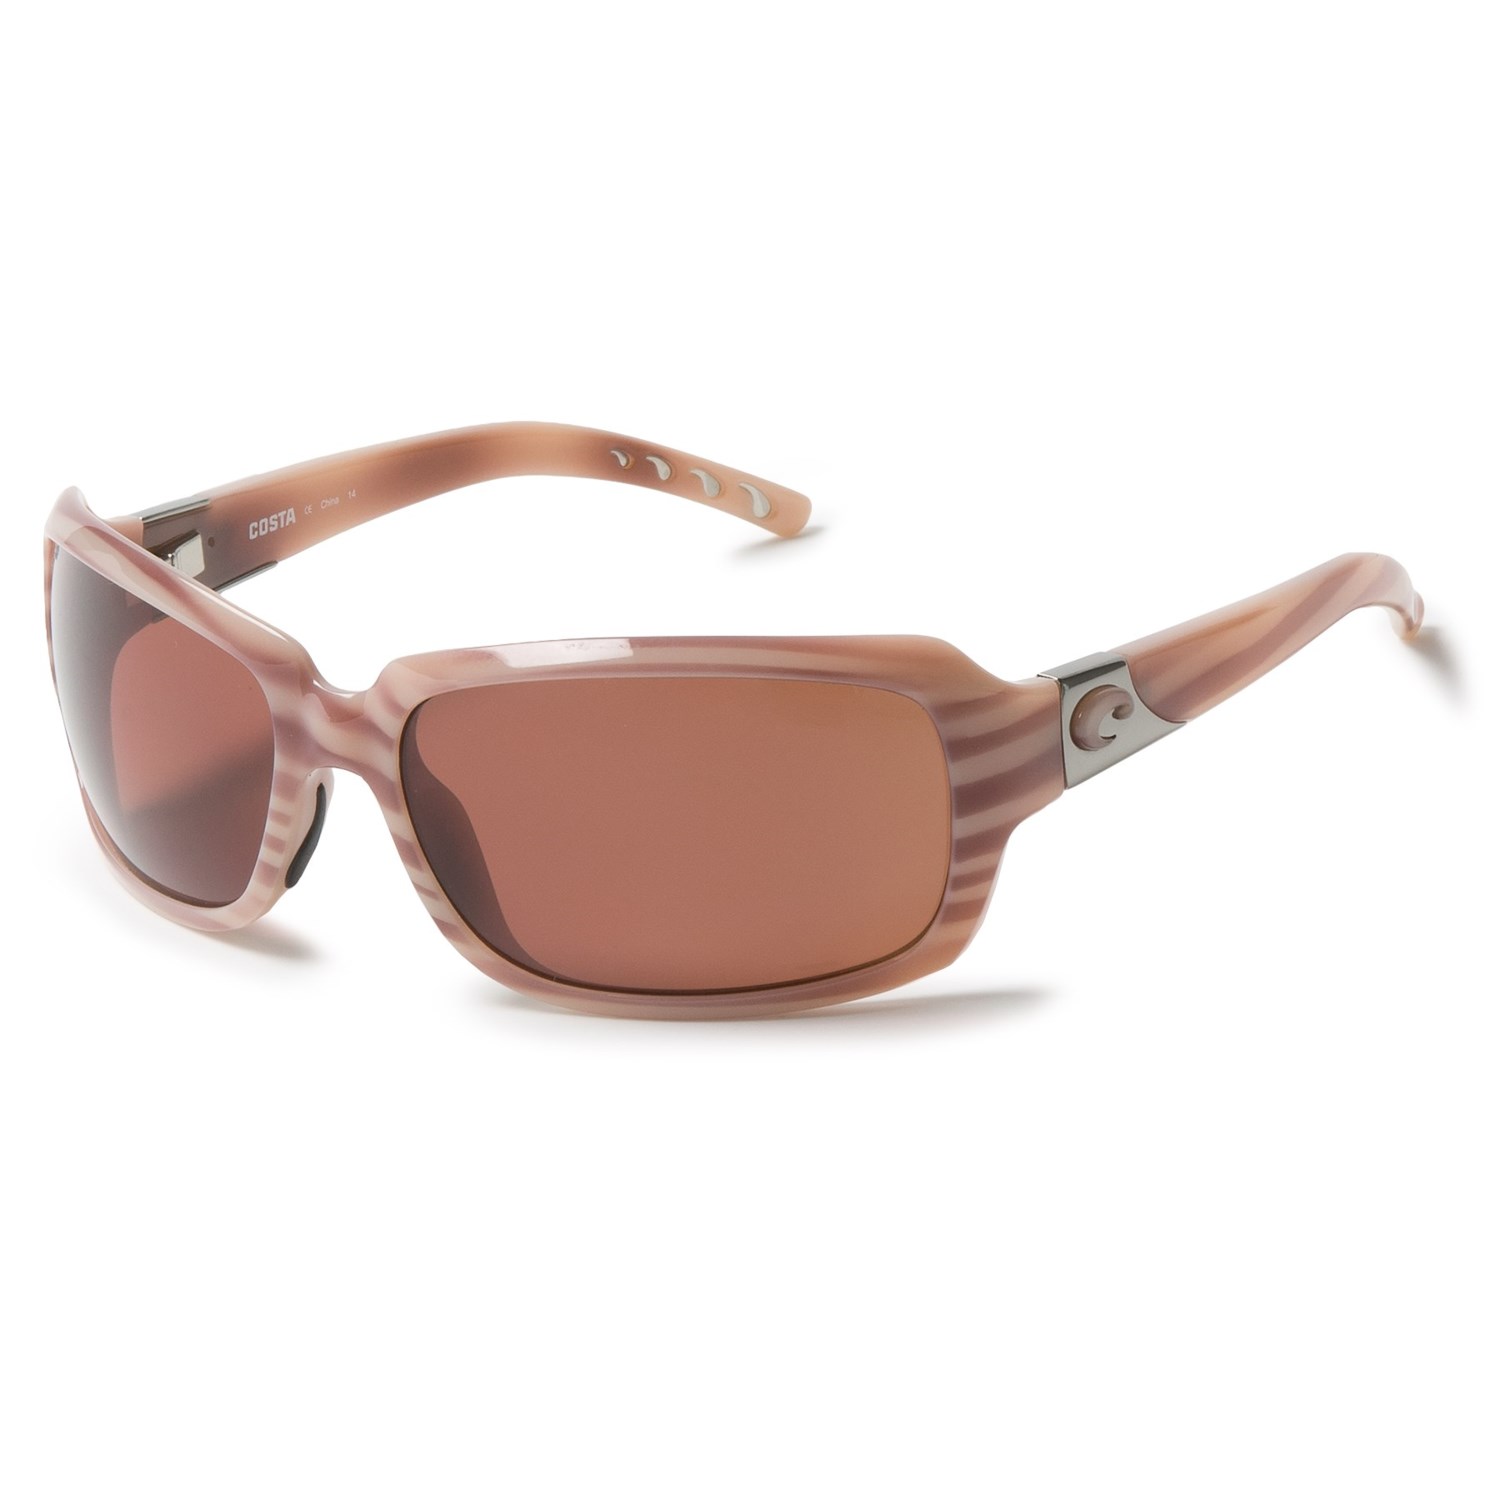 Costa Isabela Sunglasses – Polarized 580P Lenses